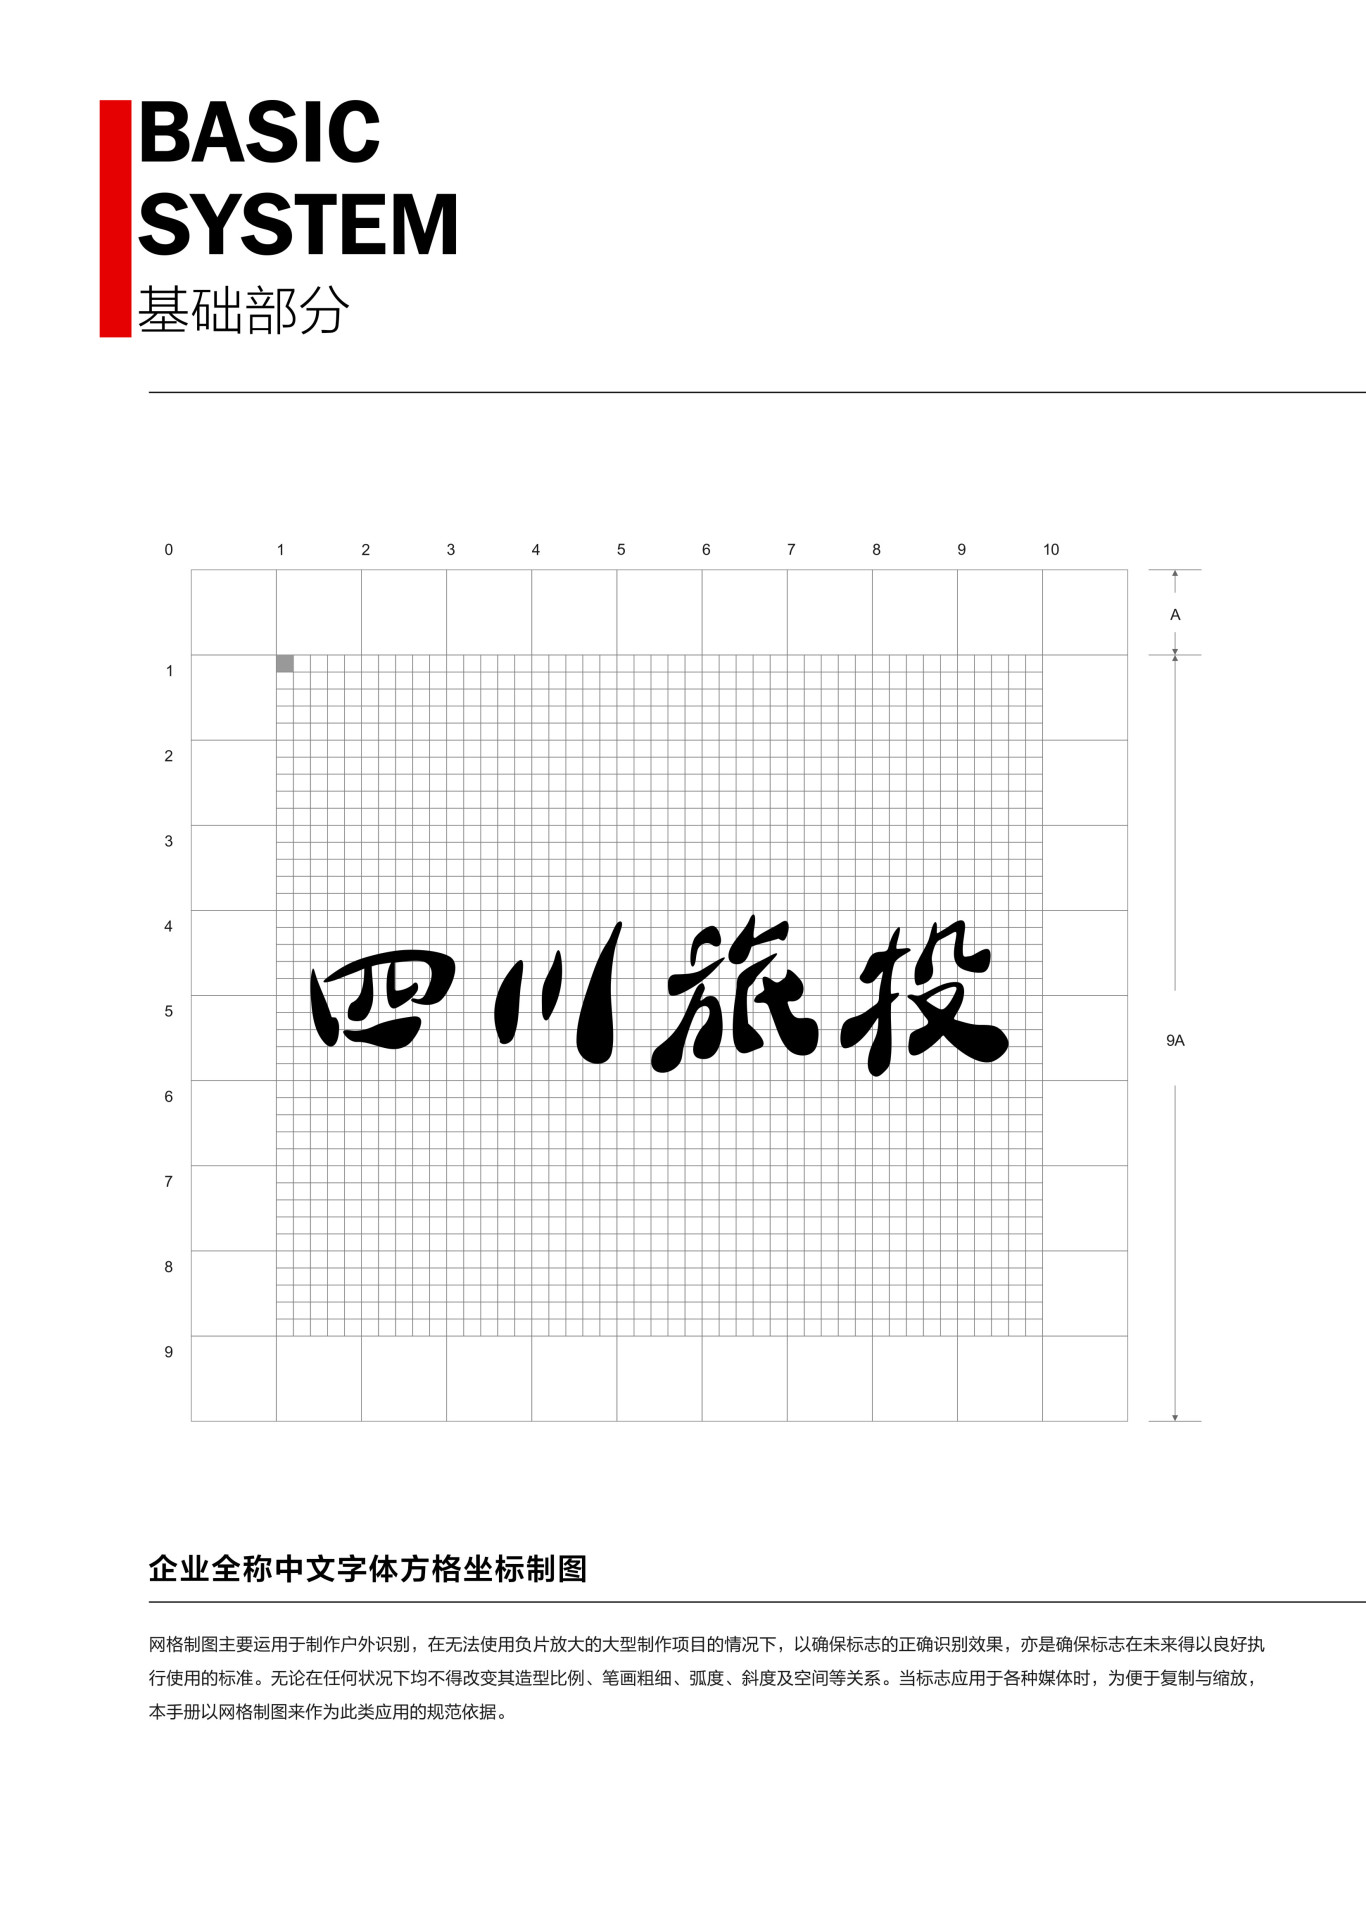 四川省旅游投資集團企業形象識別系統圖3